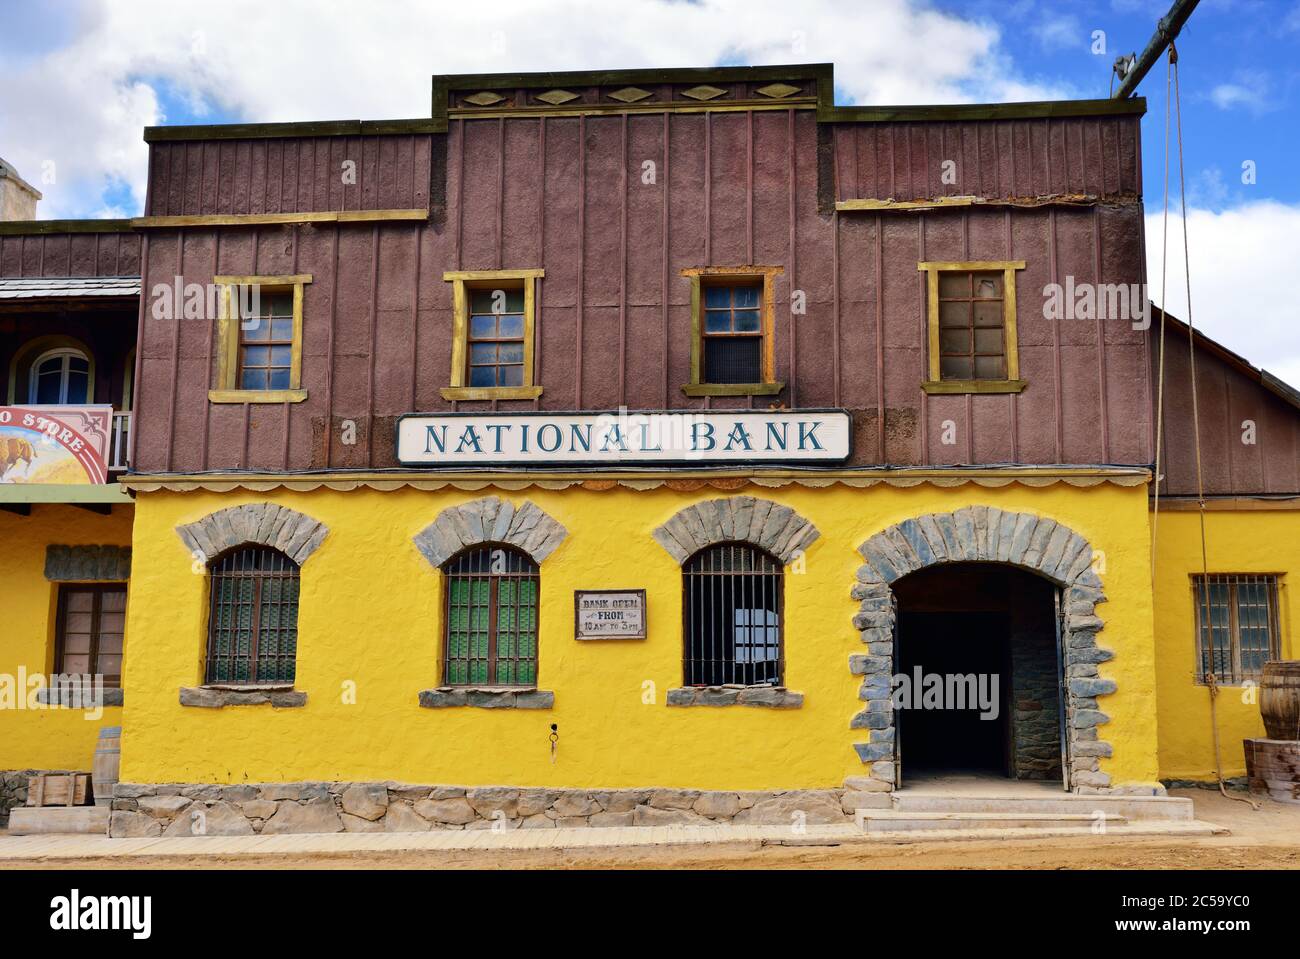 SIOUX CITY, GRAN CANARIA - 20 FÉVRIER 2014 : rue de la ville sauvage de l'ouest avec bâtiment de banque à Sioux City. Attraction touristique populaire sur l'île de Gran Canaria Banque D'Images